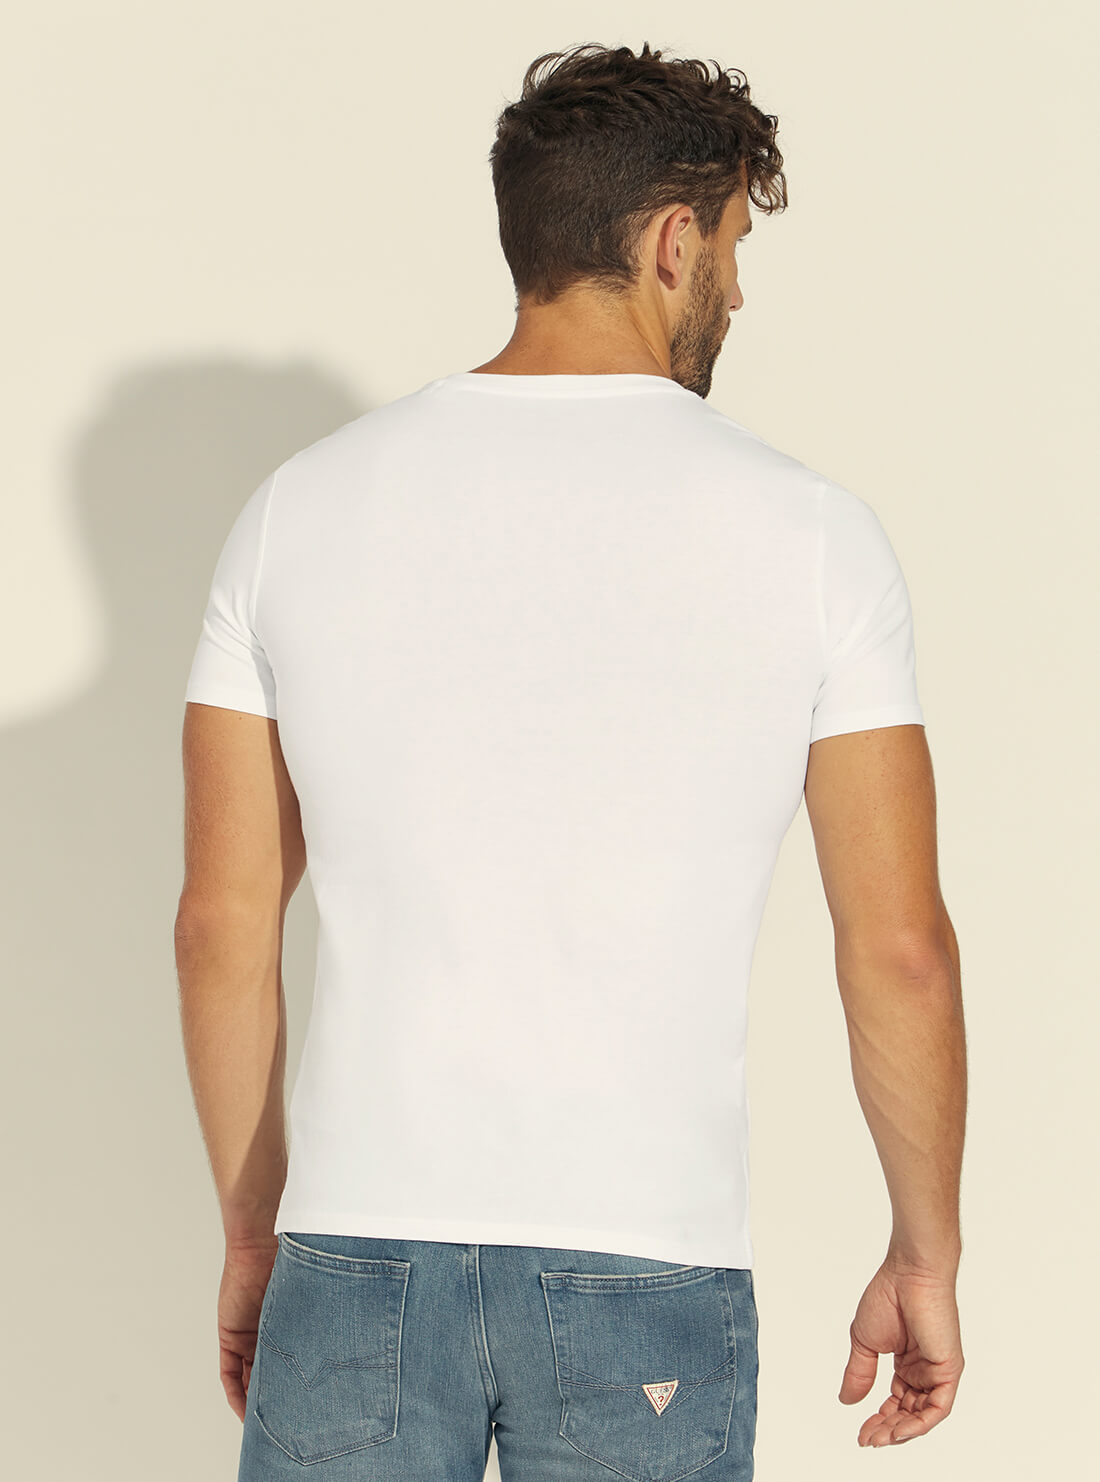 GUESS Mens Eco White V-Neck Basic T-Shirt M1RI37I3Z11 Back View